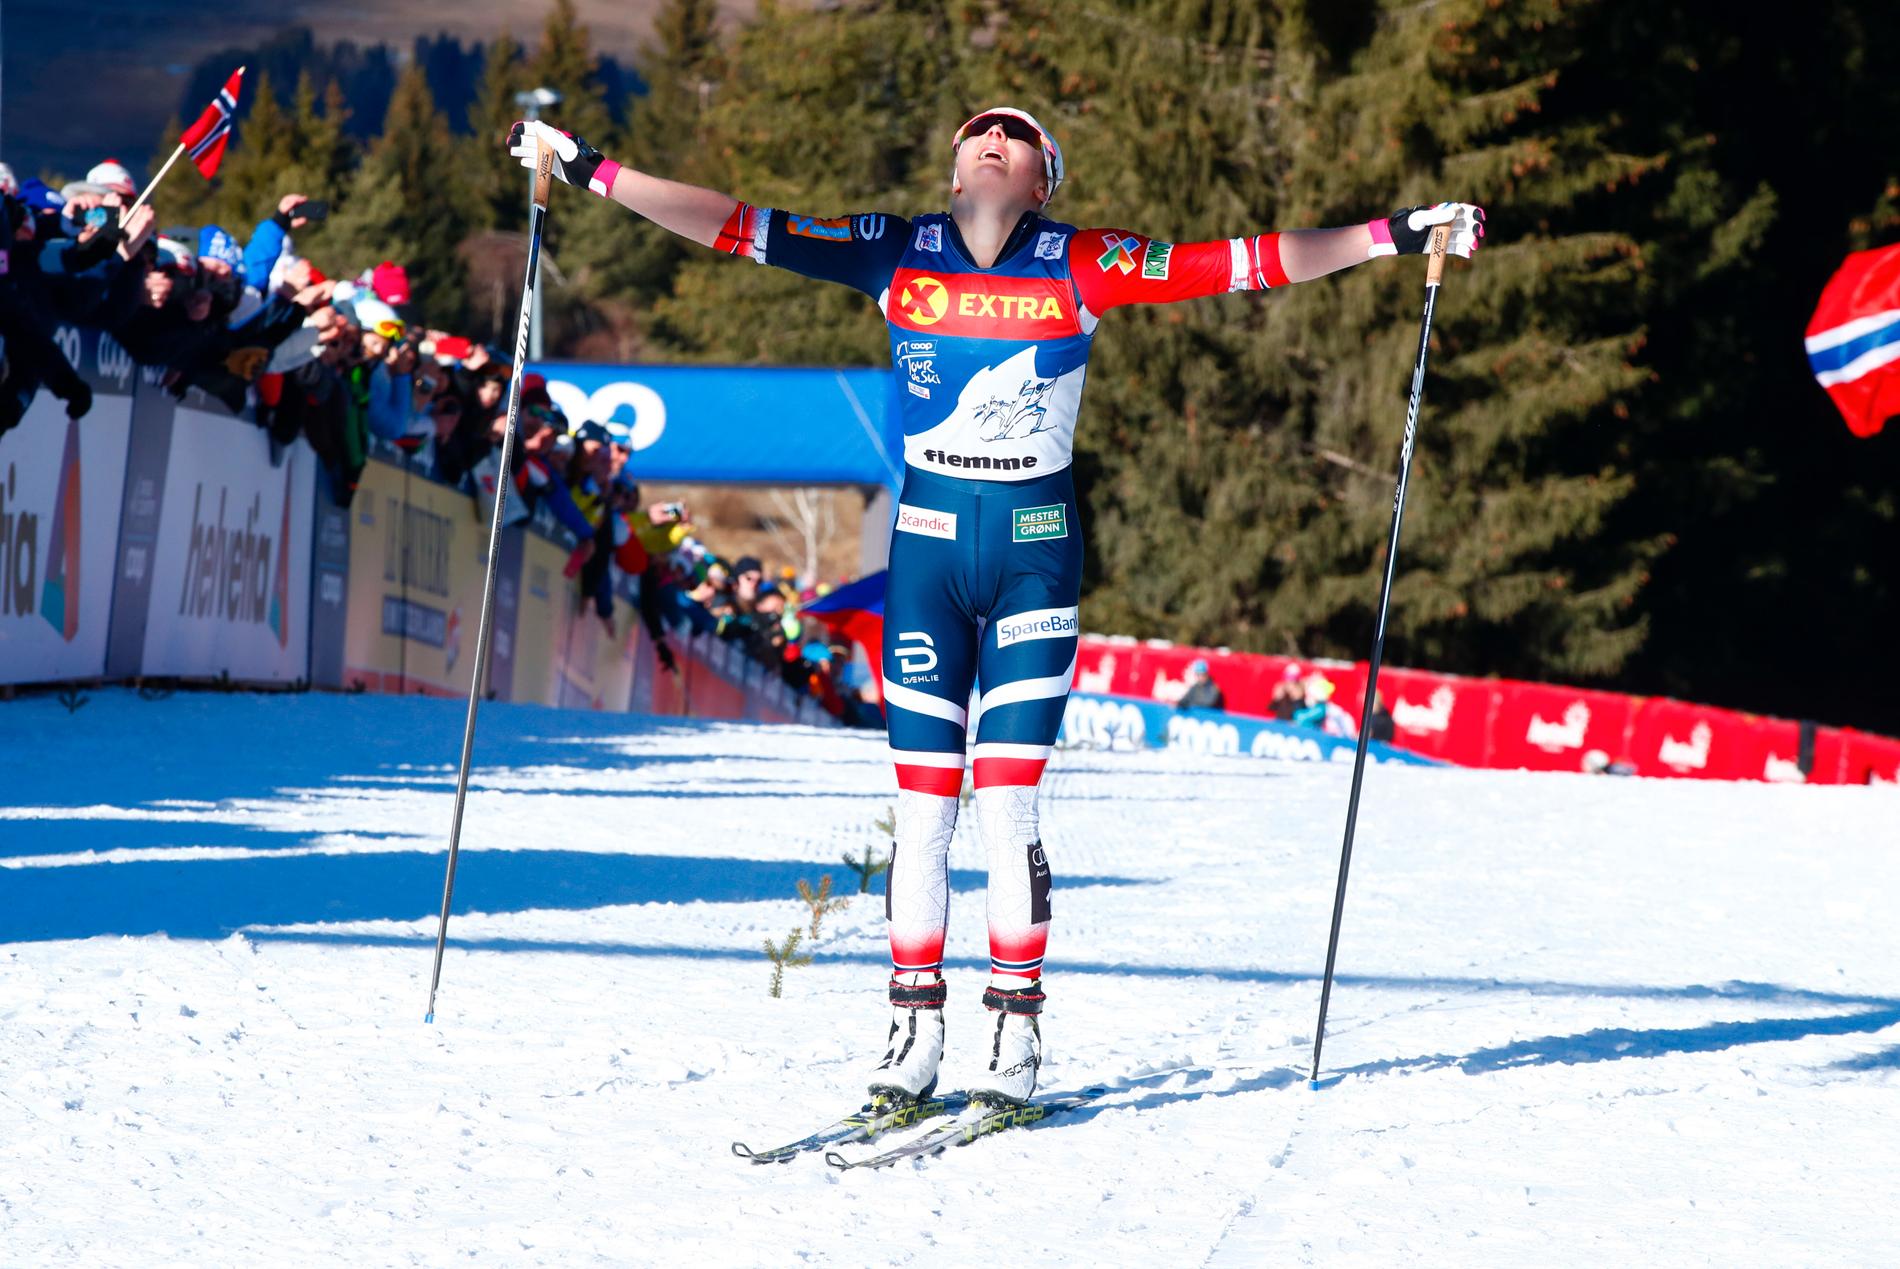 Norskan Ingvild Flugstad Østberg var först upp för Alpe Cermis i vintras och vann Tour de Ski. Arkivbild.